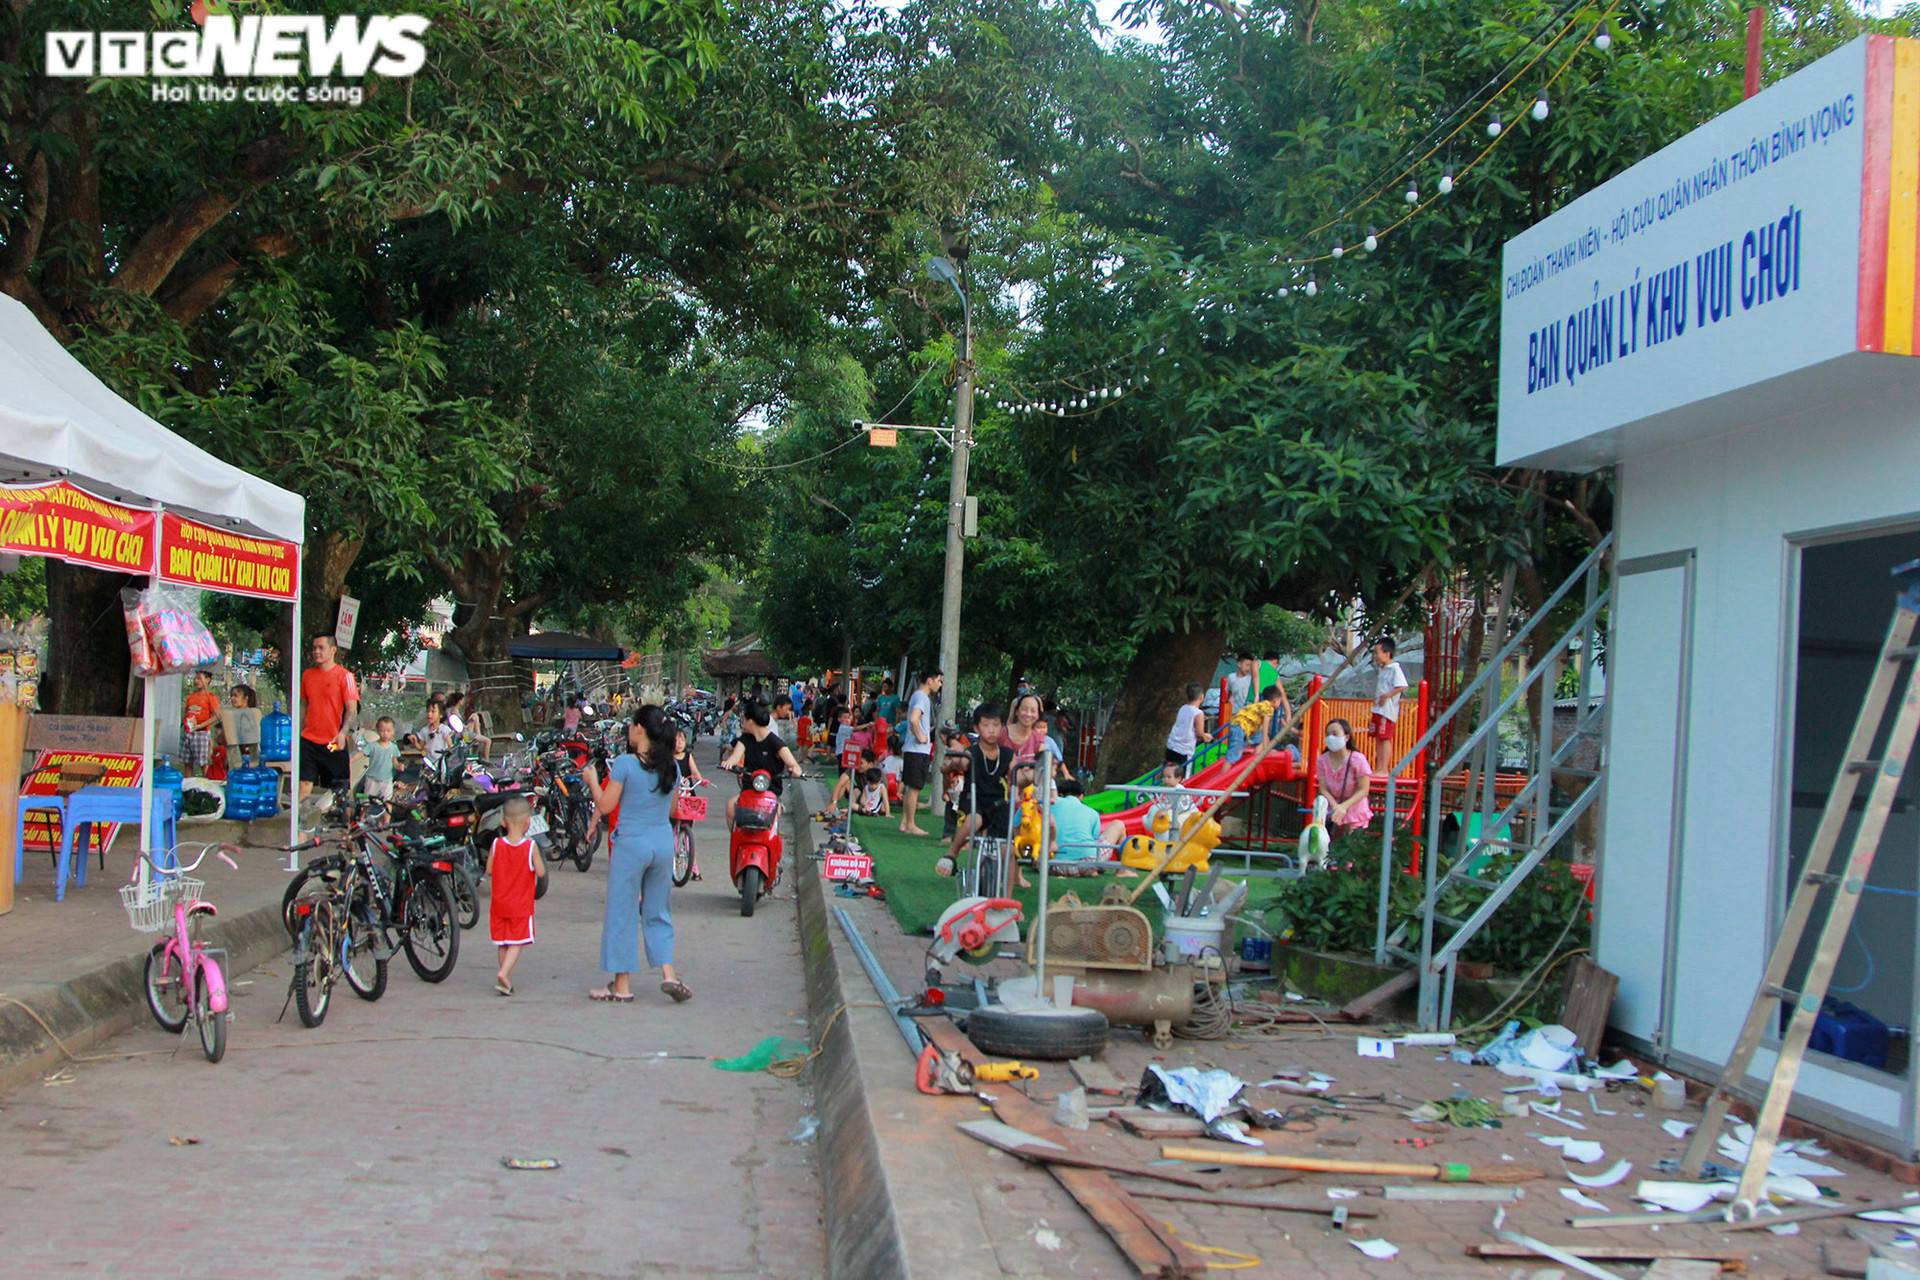 Công viên thu nhỏ ở làng quê ngoại thành Hà Nội hút hồn người già, trẻ nhỏ - 1